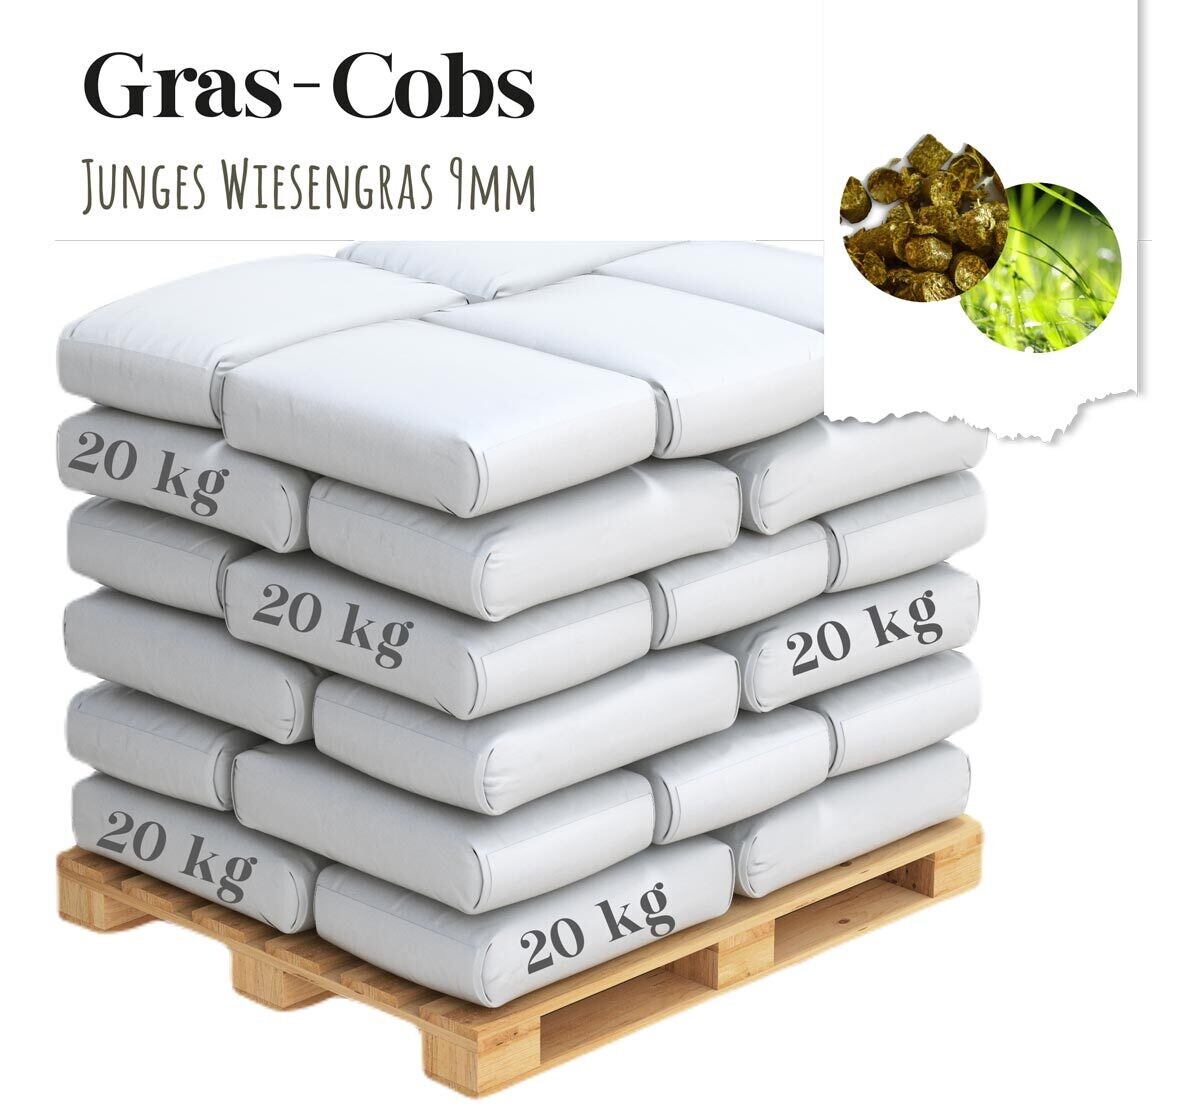 Gras-Cobs | 9mm | Palettenversand